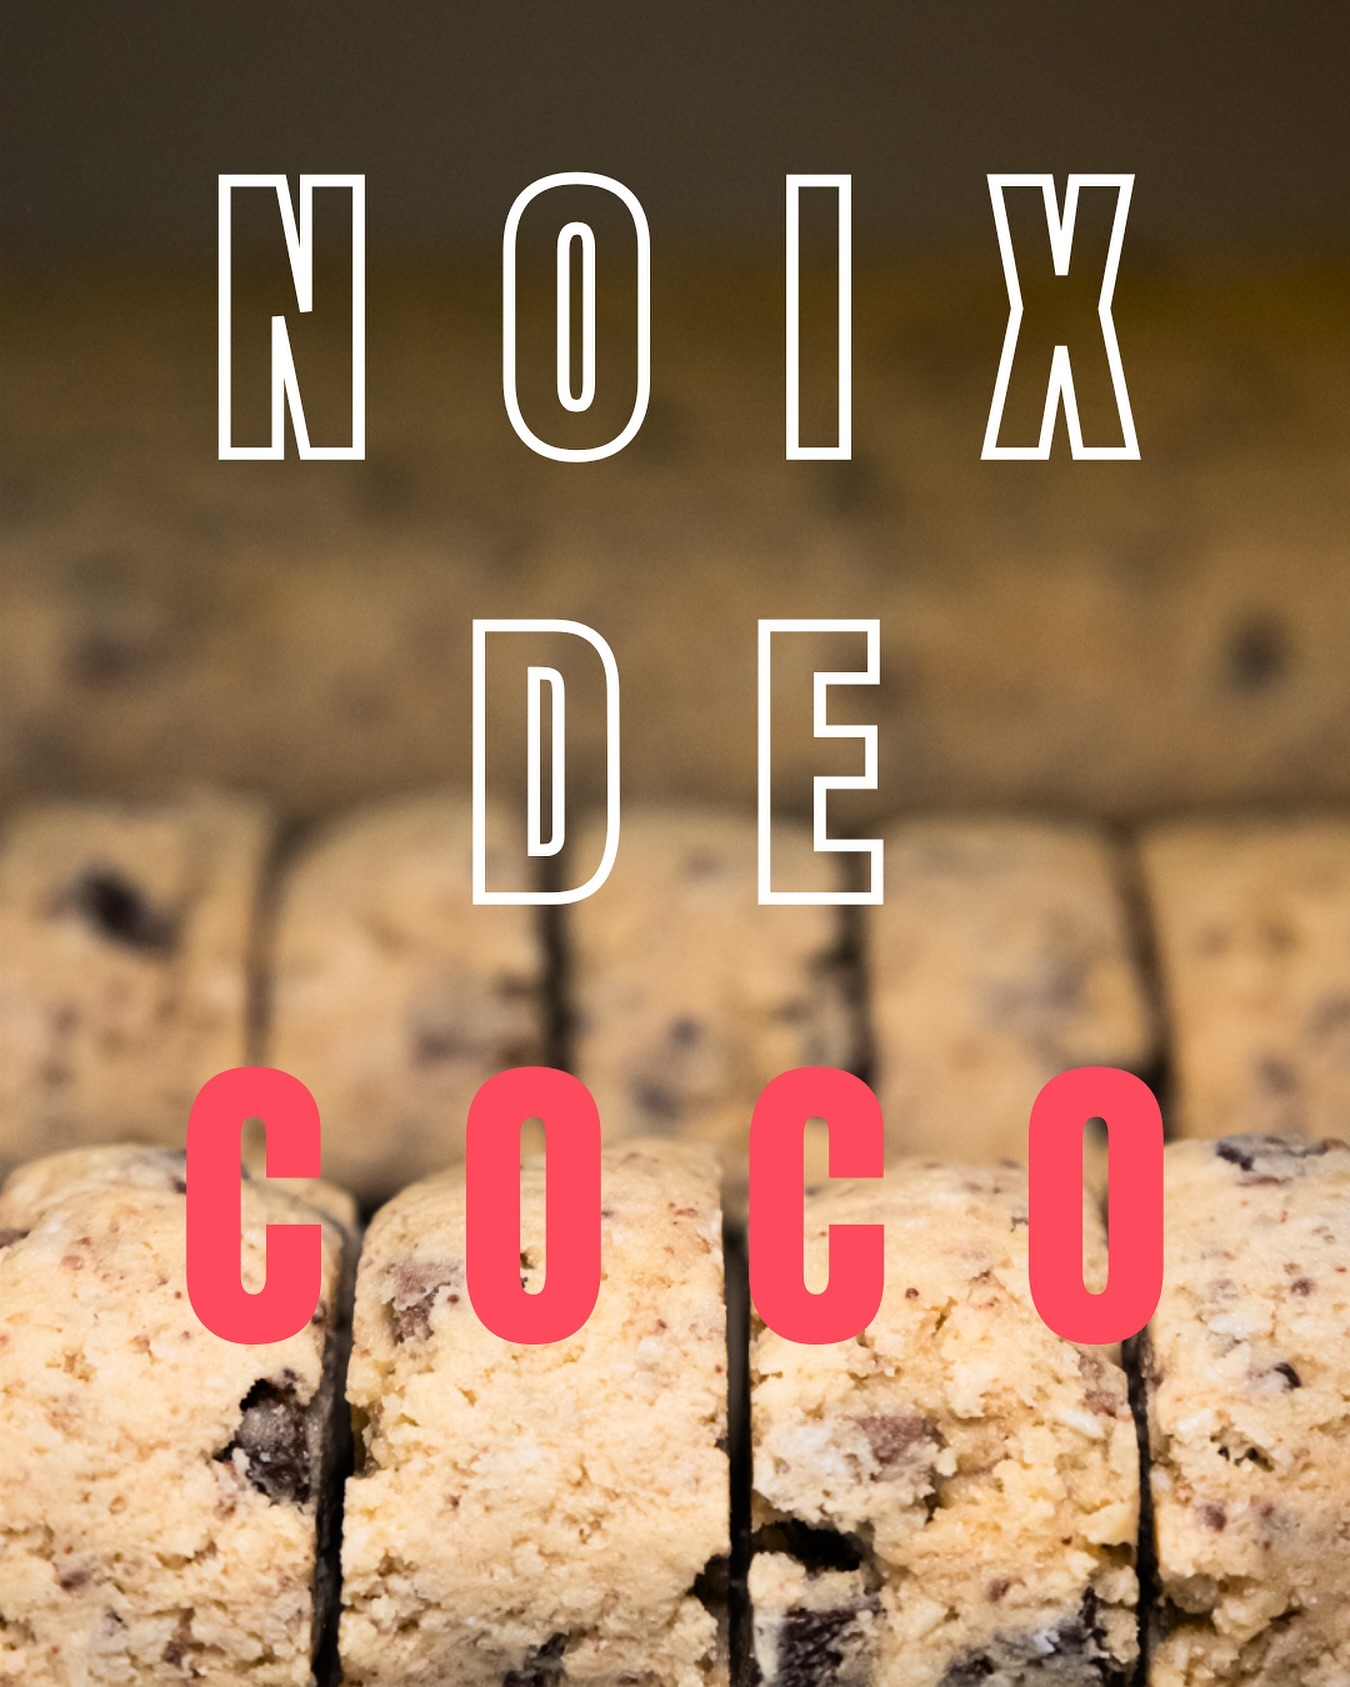 ALERTE NOUVEAUTÉ !!! 🥥 

Les Cookies Giraudon à la noix de coco sont désormais disponibles à la vente ! Qui a hâte de goûter ?

🍪 Faits maison à Gémenos (13)
📍Disponibles dans plusieurs points de vente
💌 Plus d’infos sur notre site web (lien dans notre bio)

#CookiesGiraudon #Bonheur #CookiesAvecAmour #GourmandiseAuthentique #homemadewithlove #CookiesArtisanaux #FaitAvecAmour #Gémenos #CuisineArtisanale #marseille #madeinfrance